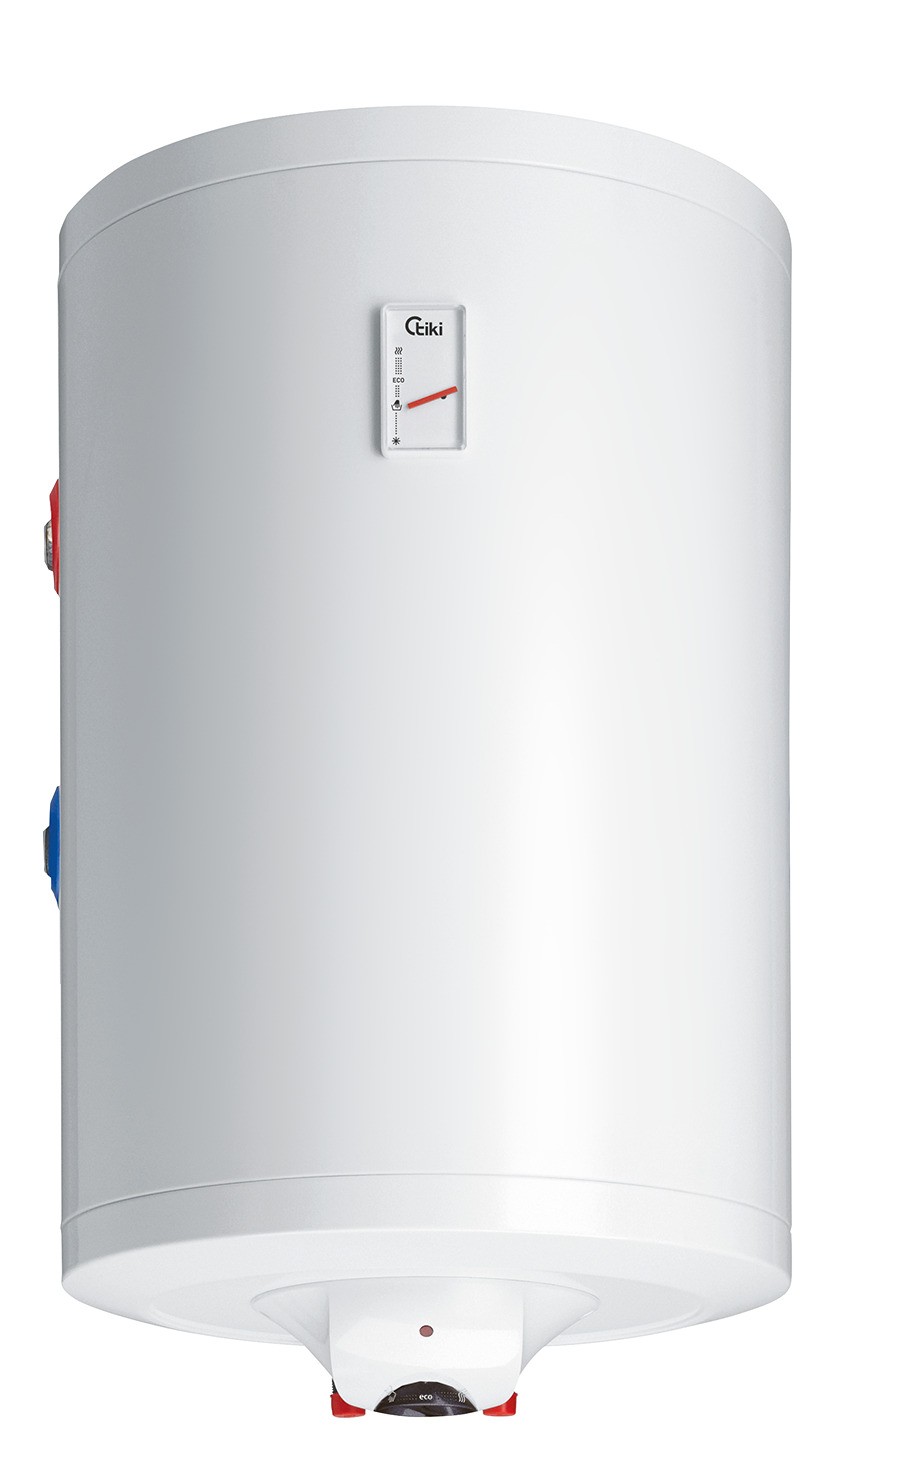 Комбинированный водонагреватель Tiki Prime CL 100 в интернет-магазине, главное фото